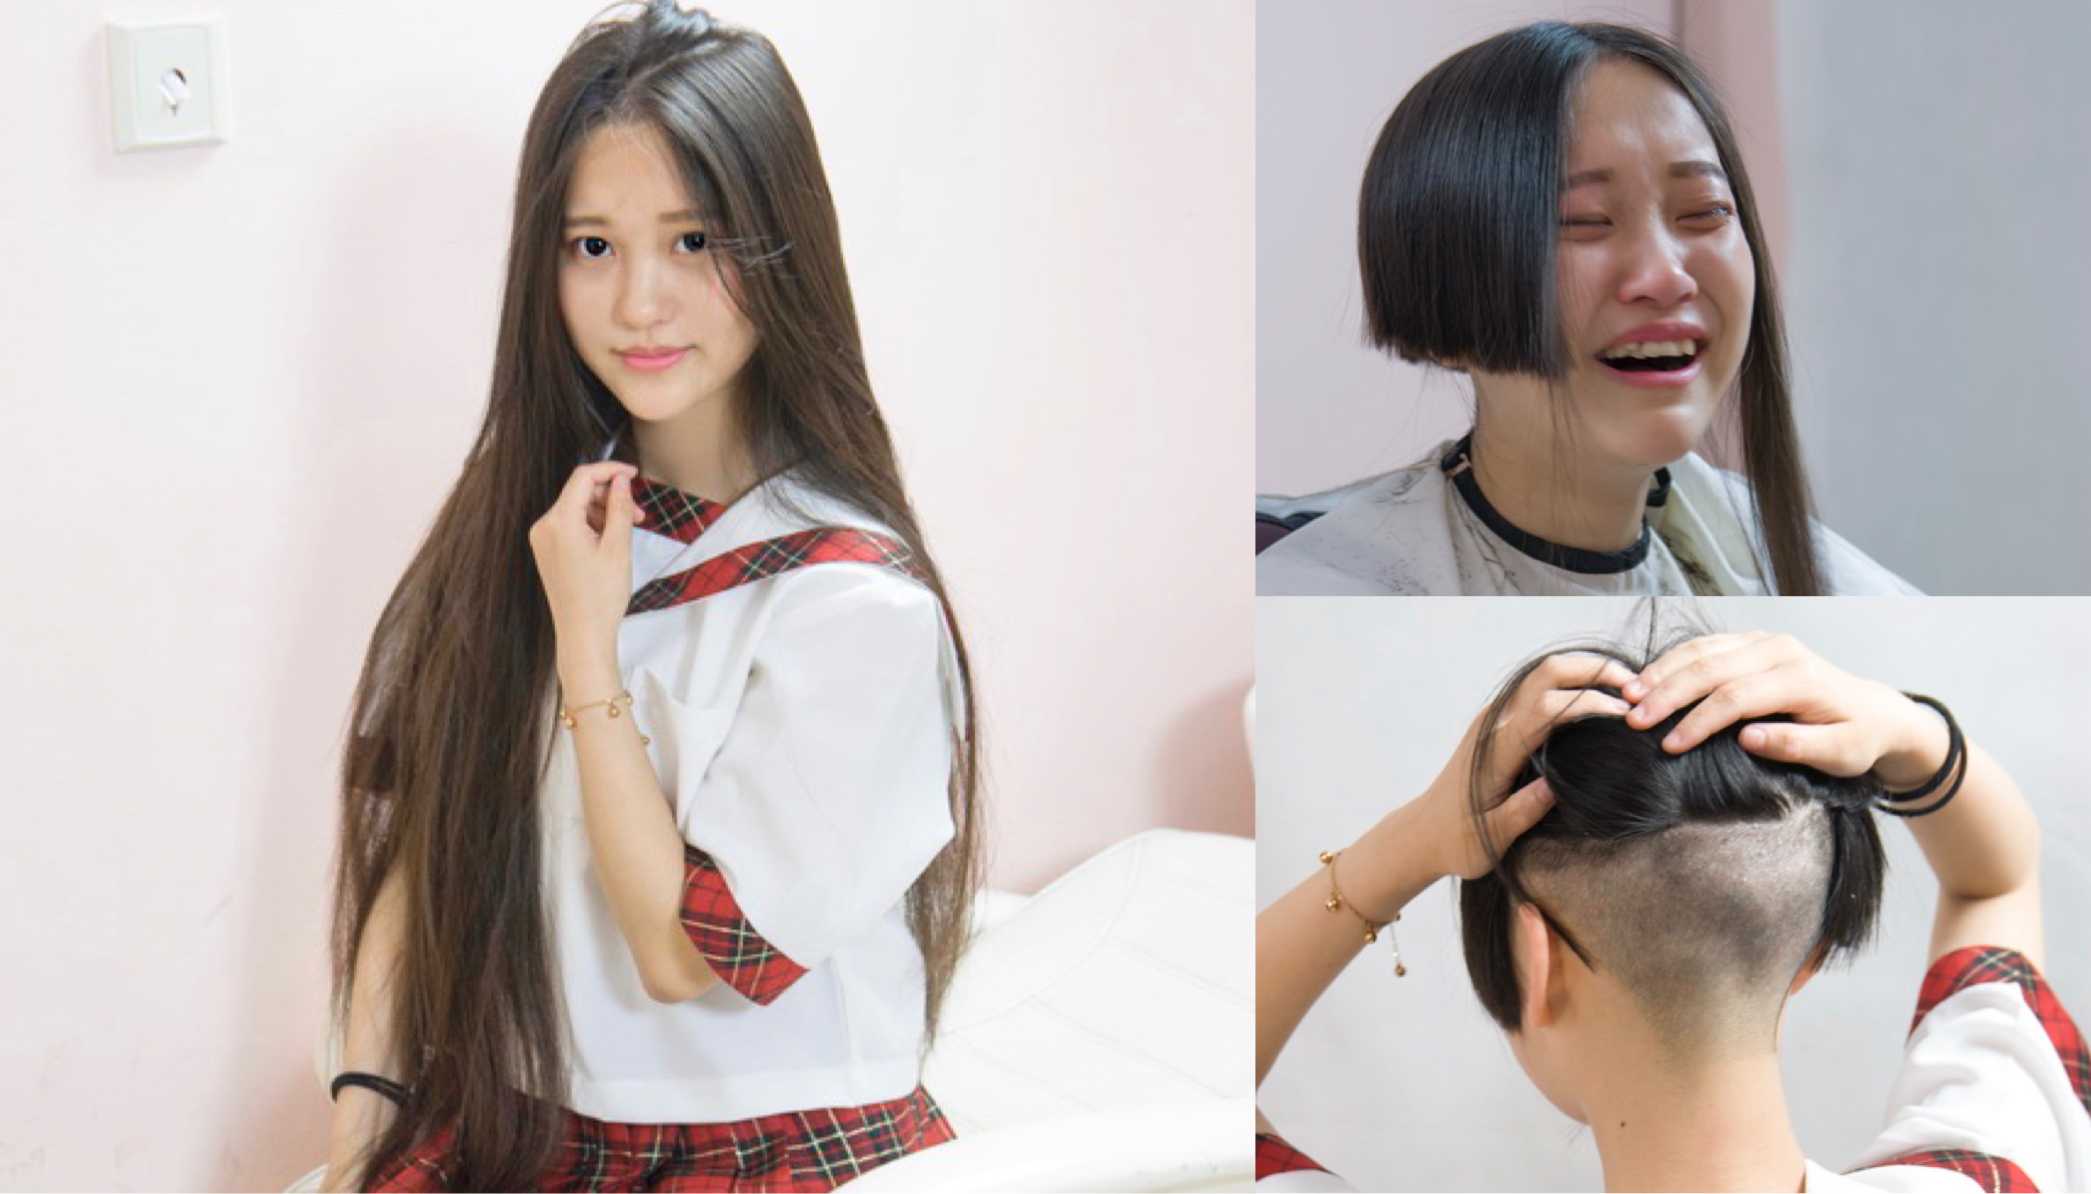 Chinese beauty cropped haircut No5 　中国女優号泣バリカン刈上げ断髪